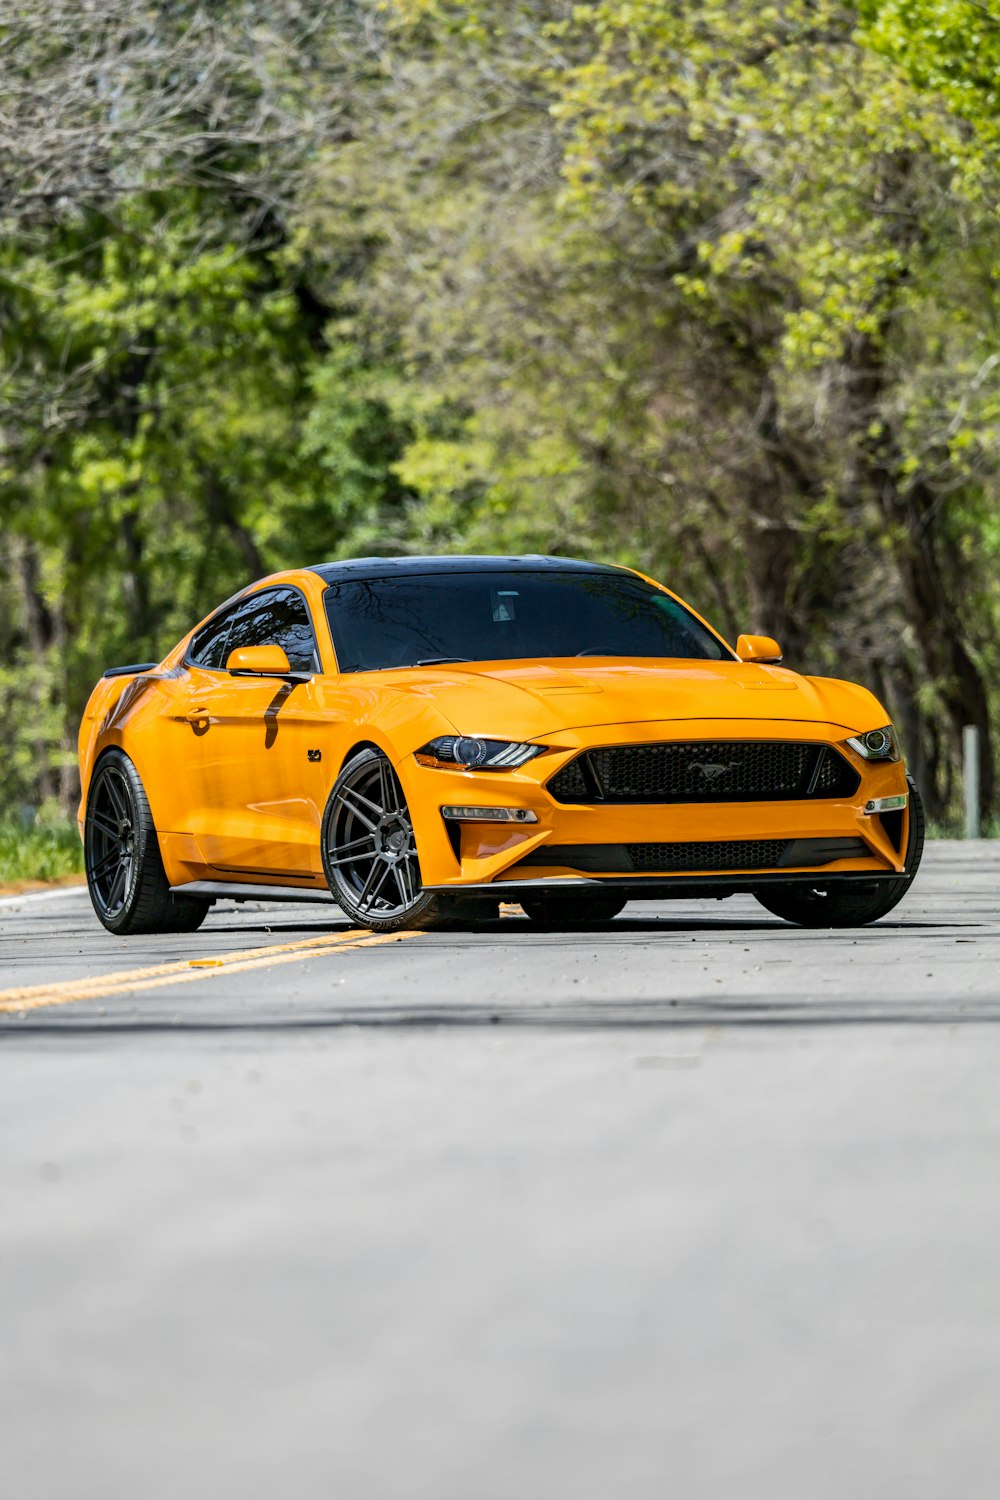 Un Ford Mustang amarillo estacionado al costado de la carretera